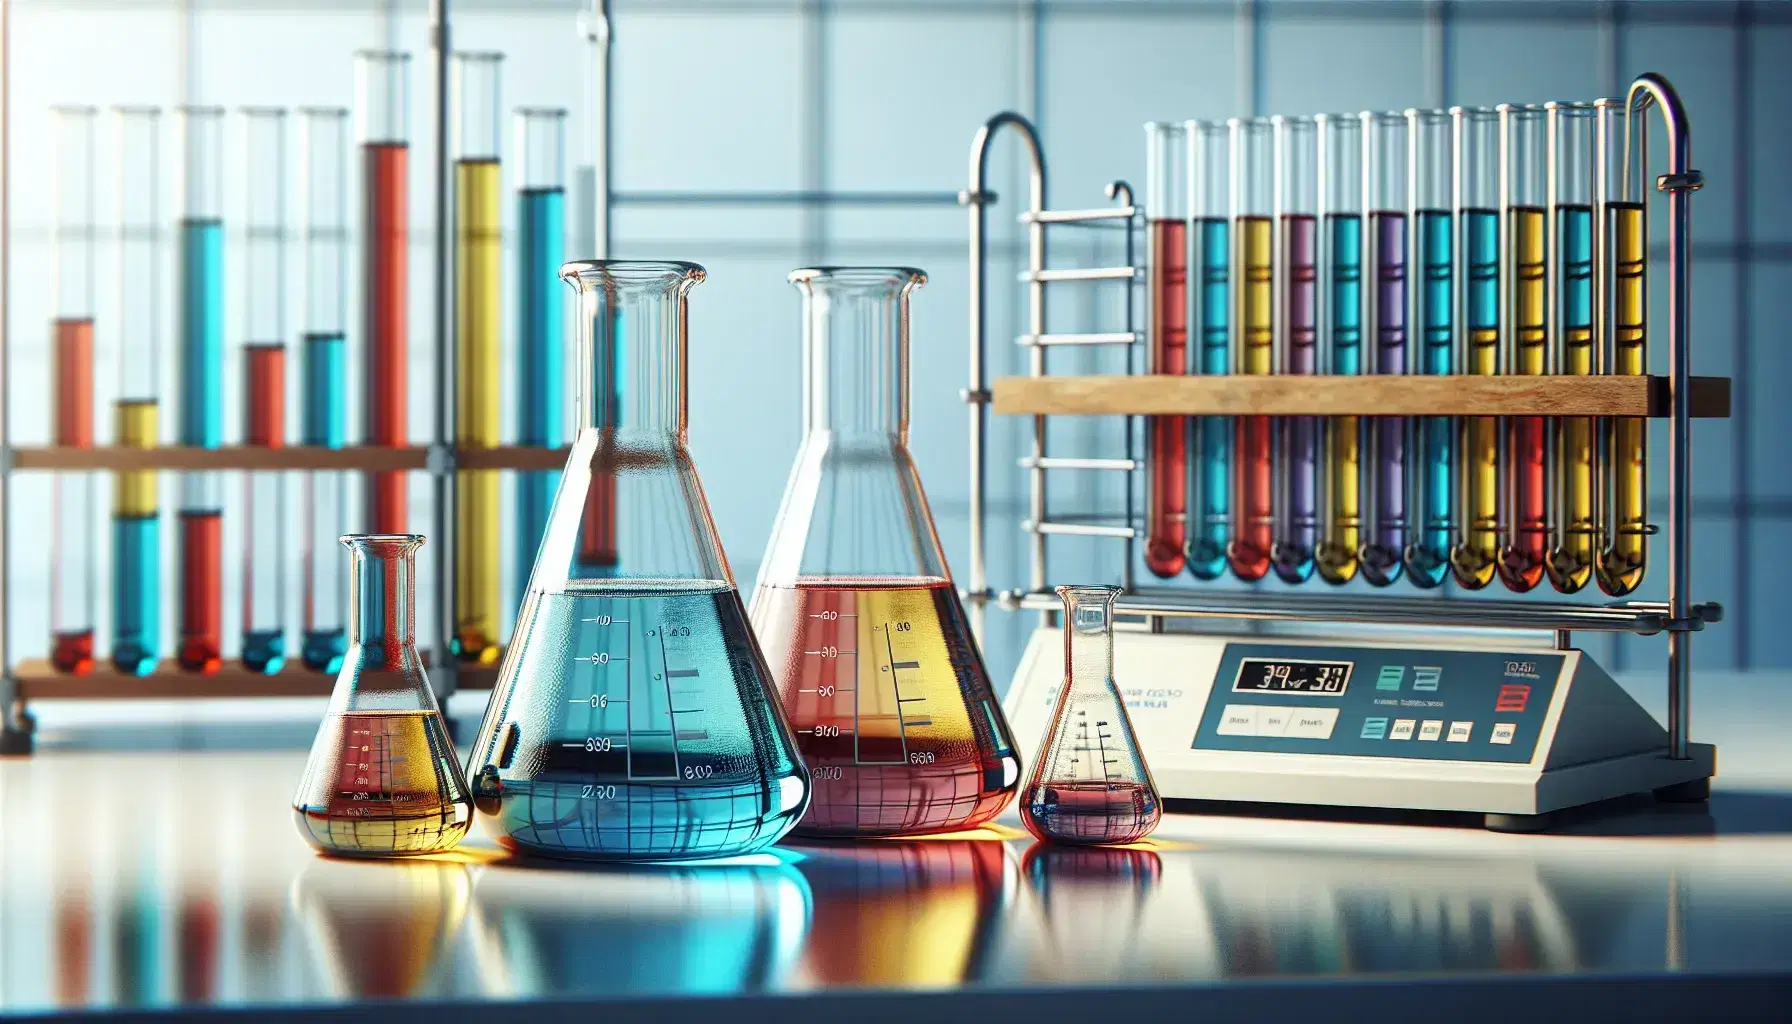 Laboratorio de química con matraces Erlenmeyer con líquidos de colores y tubos de ensayo en estante, junto a una balanza analítica.